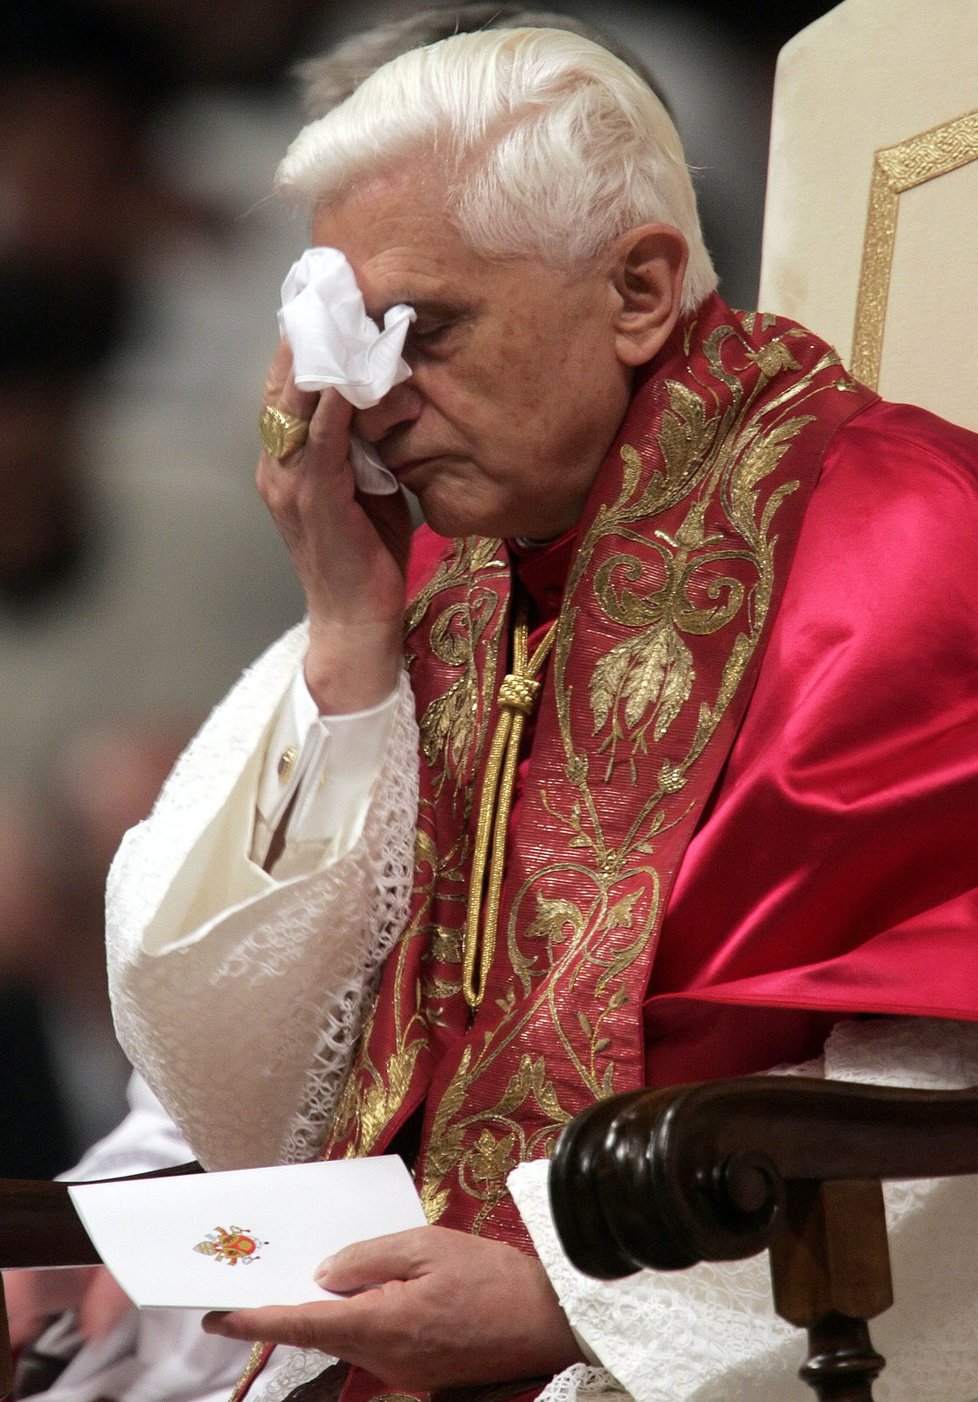 Řijen 2005 - Benedikt XVI. si otírá obličej během mše ve Vatikánu